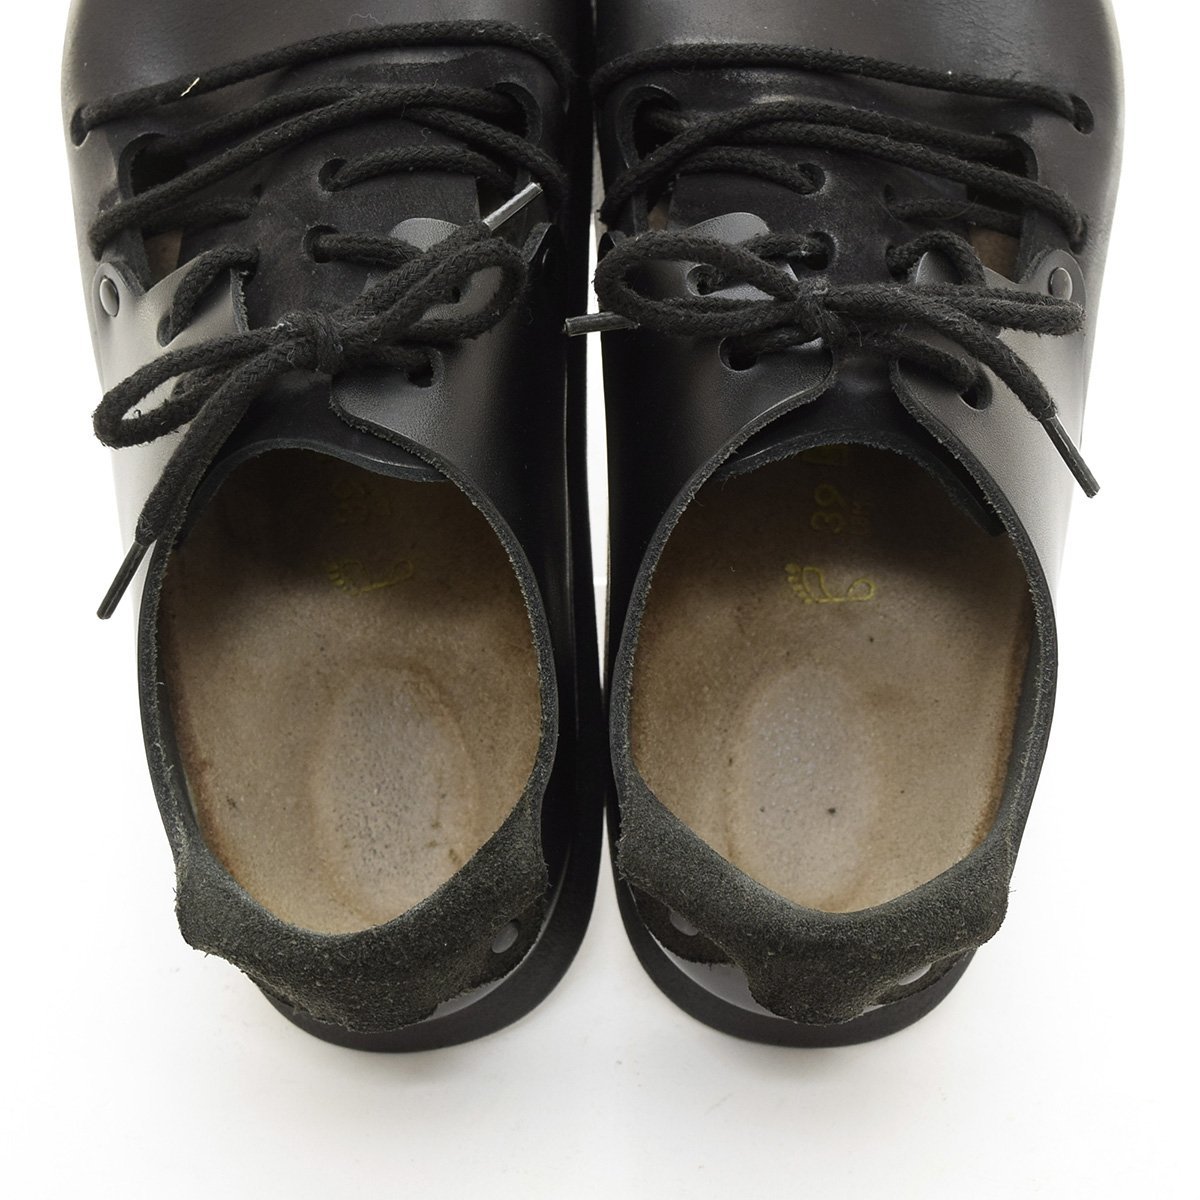 ◆501032 BIRKENSTOCK ビルケンシュトック ◆レザーサンダル 革靴 MONTANA モンタナ サイズ39/25.0cm相当 メンズ ブラック_画像6